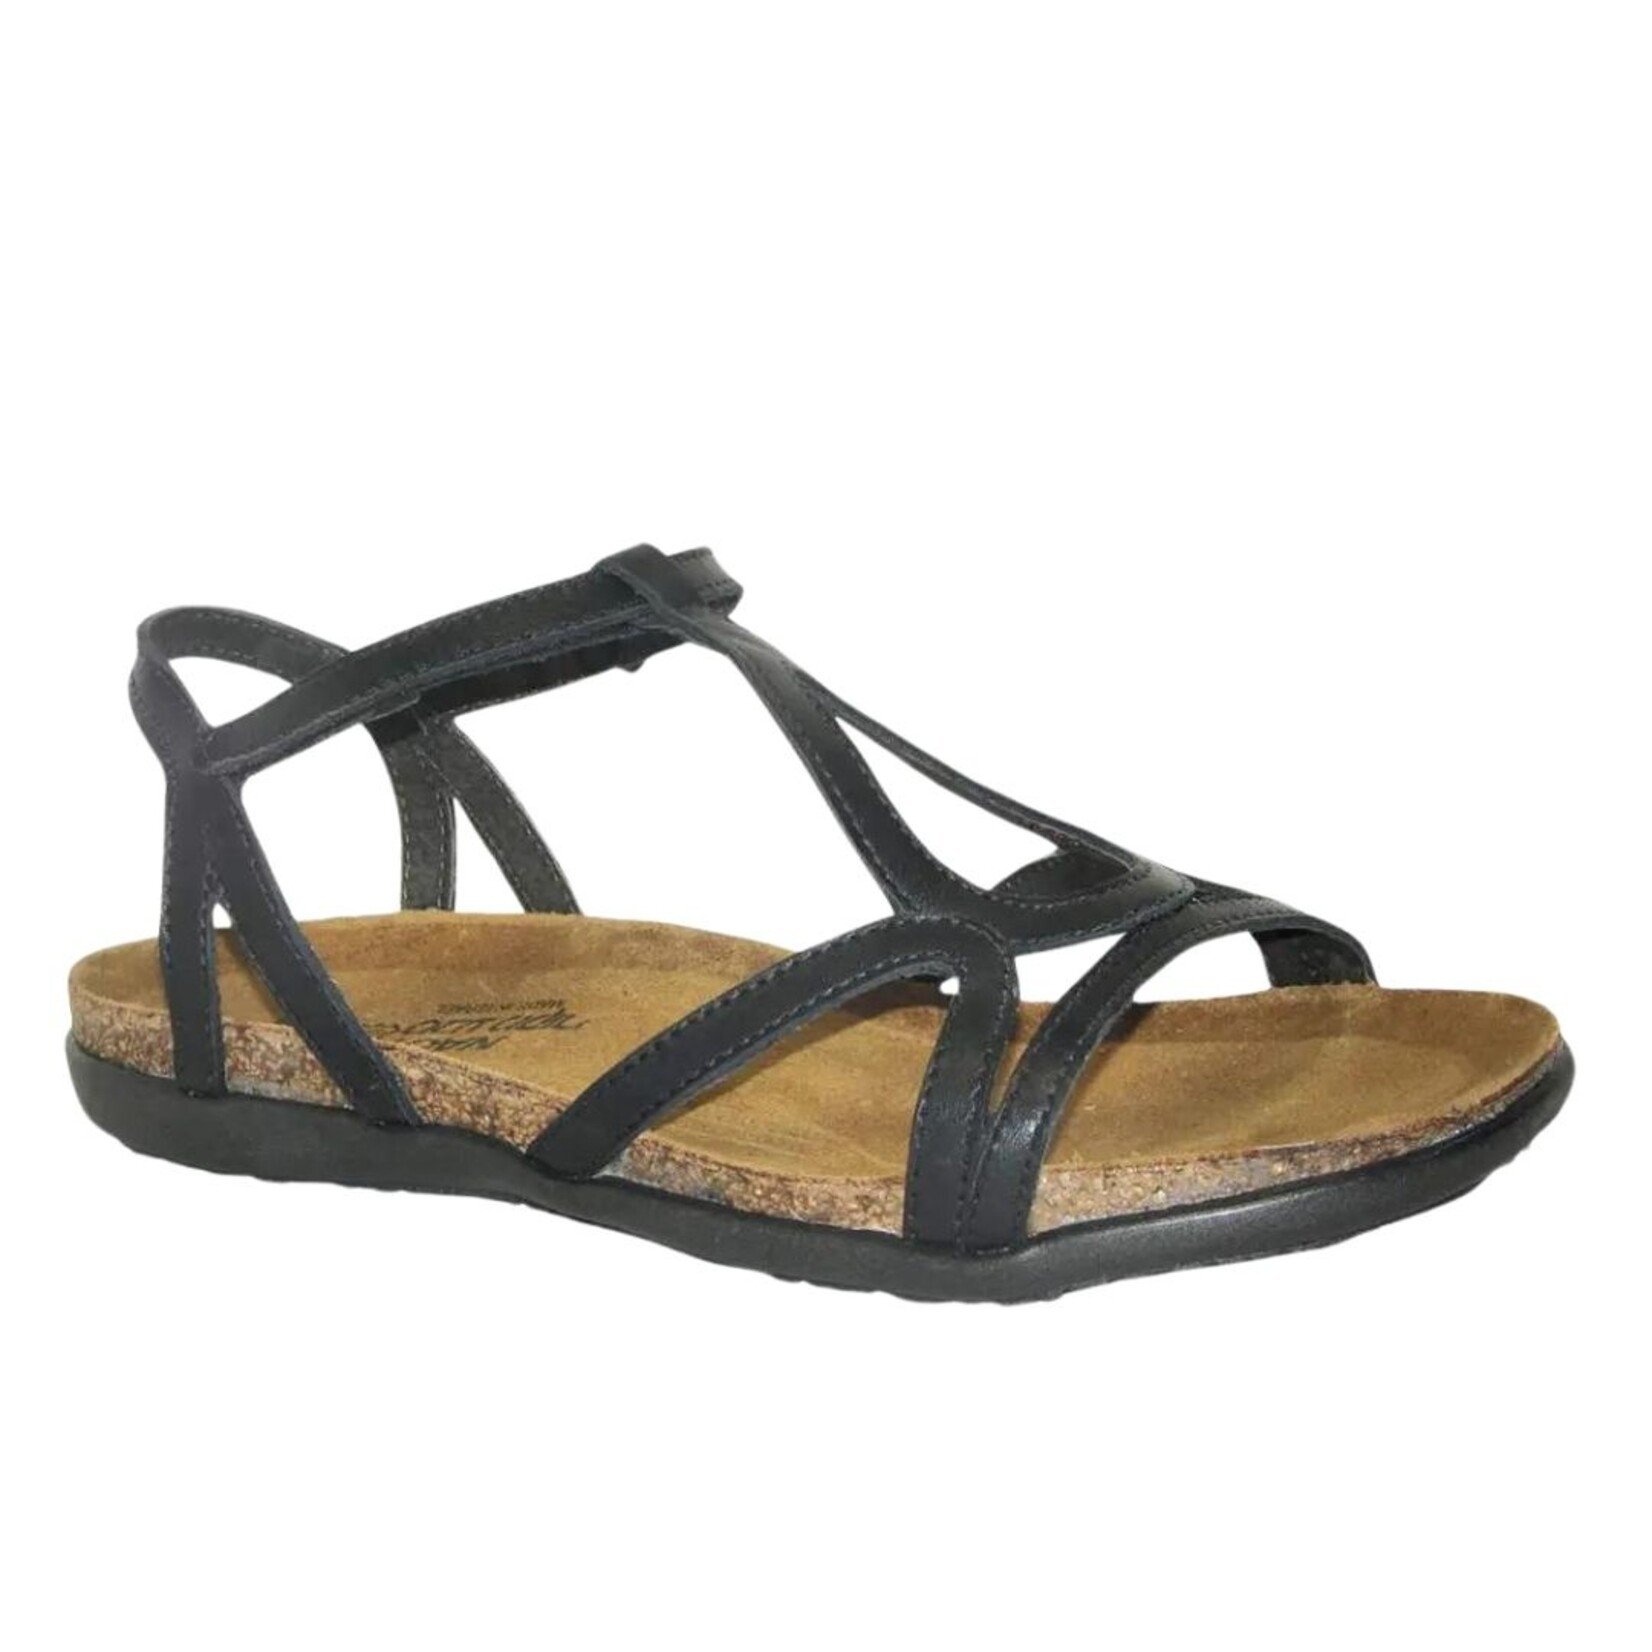 Naot Naot Dorith Women’s Sandals